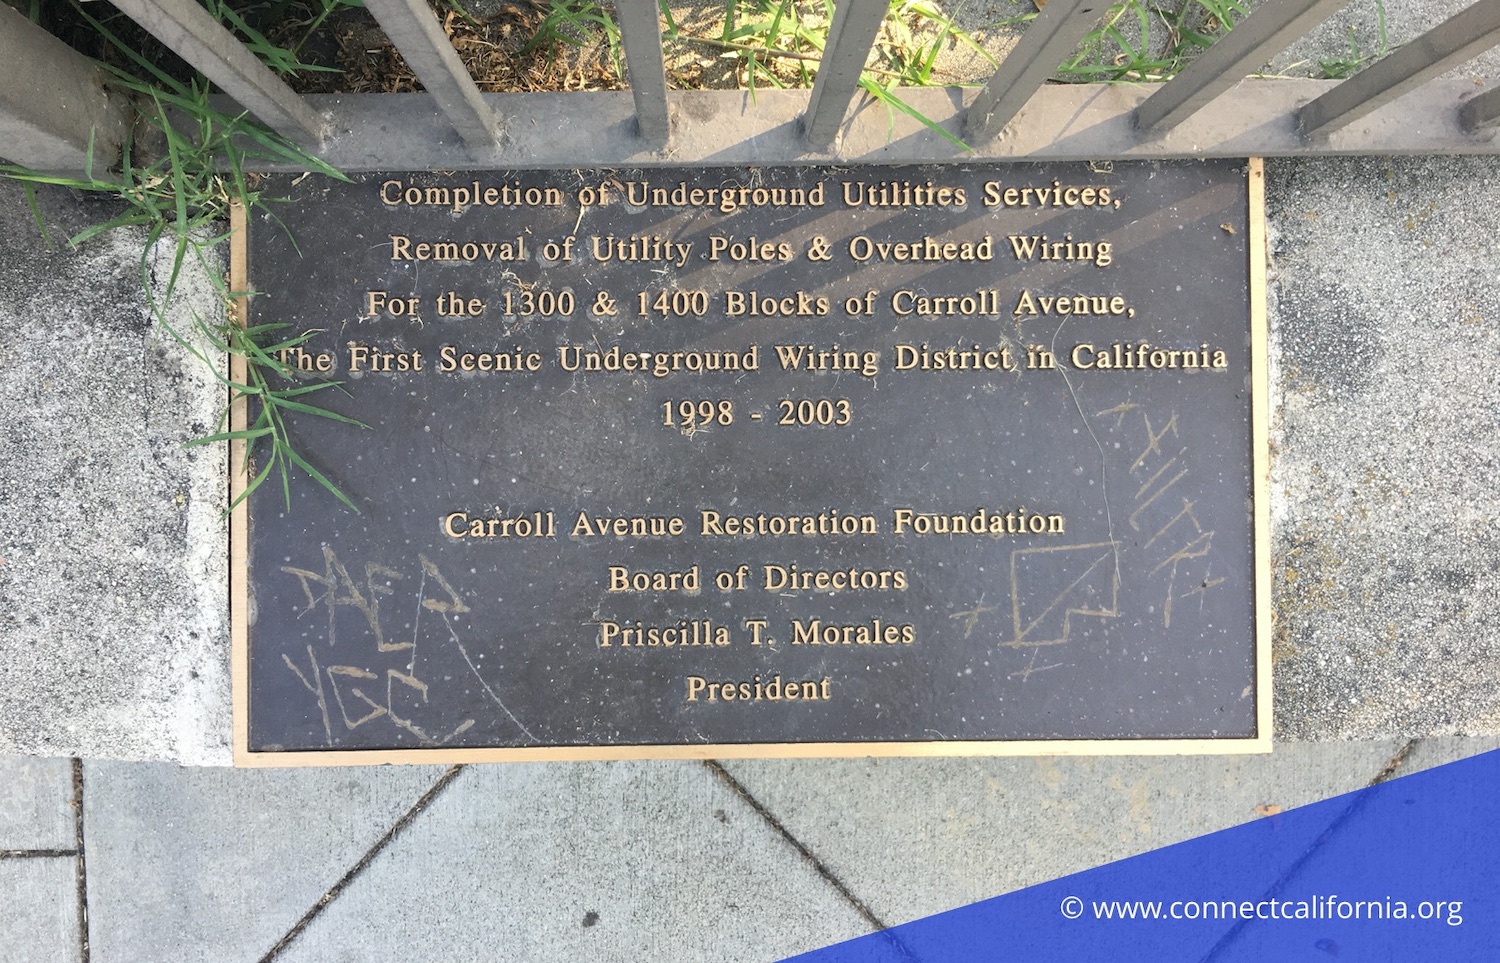 Echo Park plaque about utilities